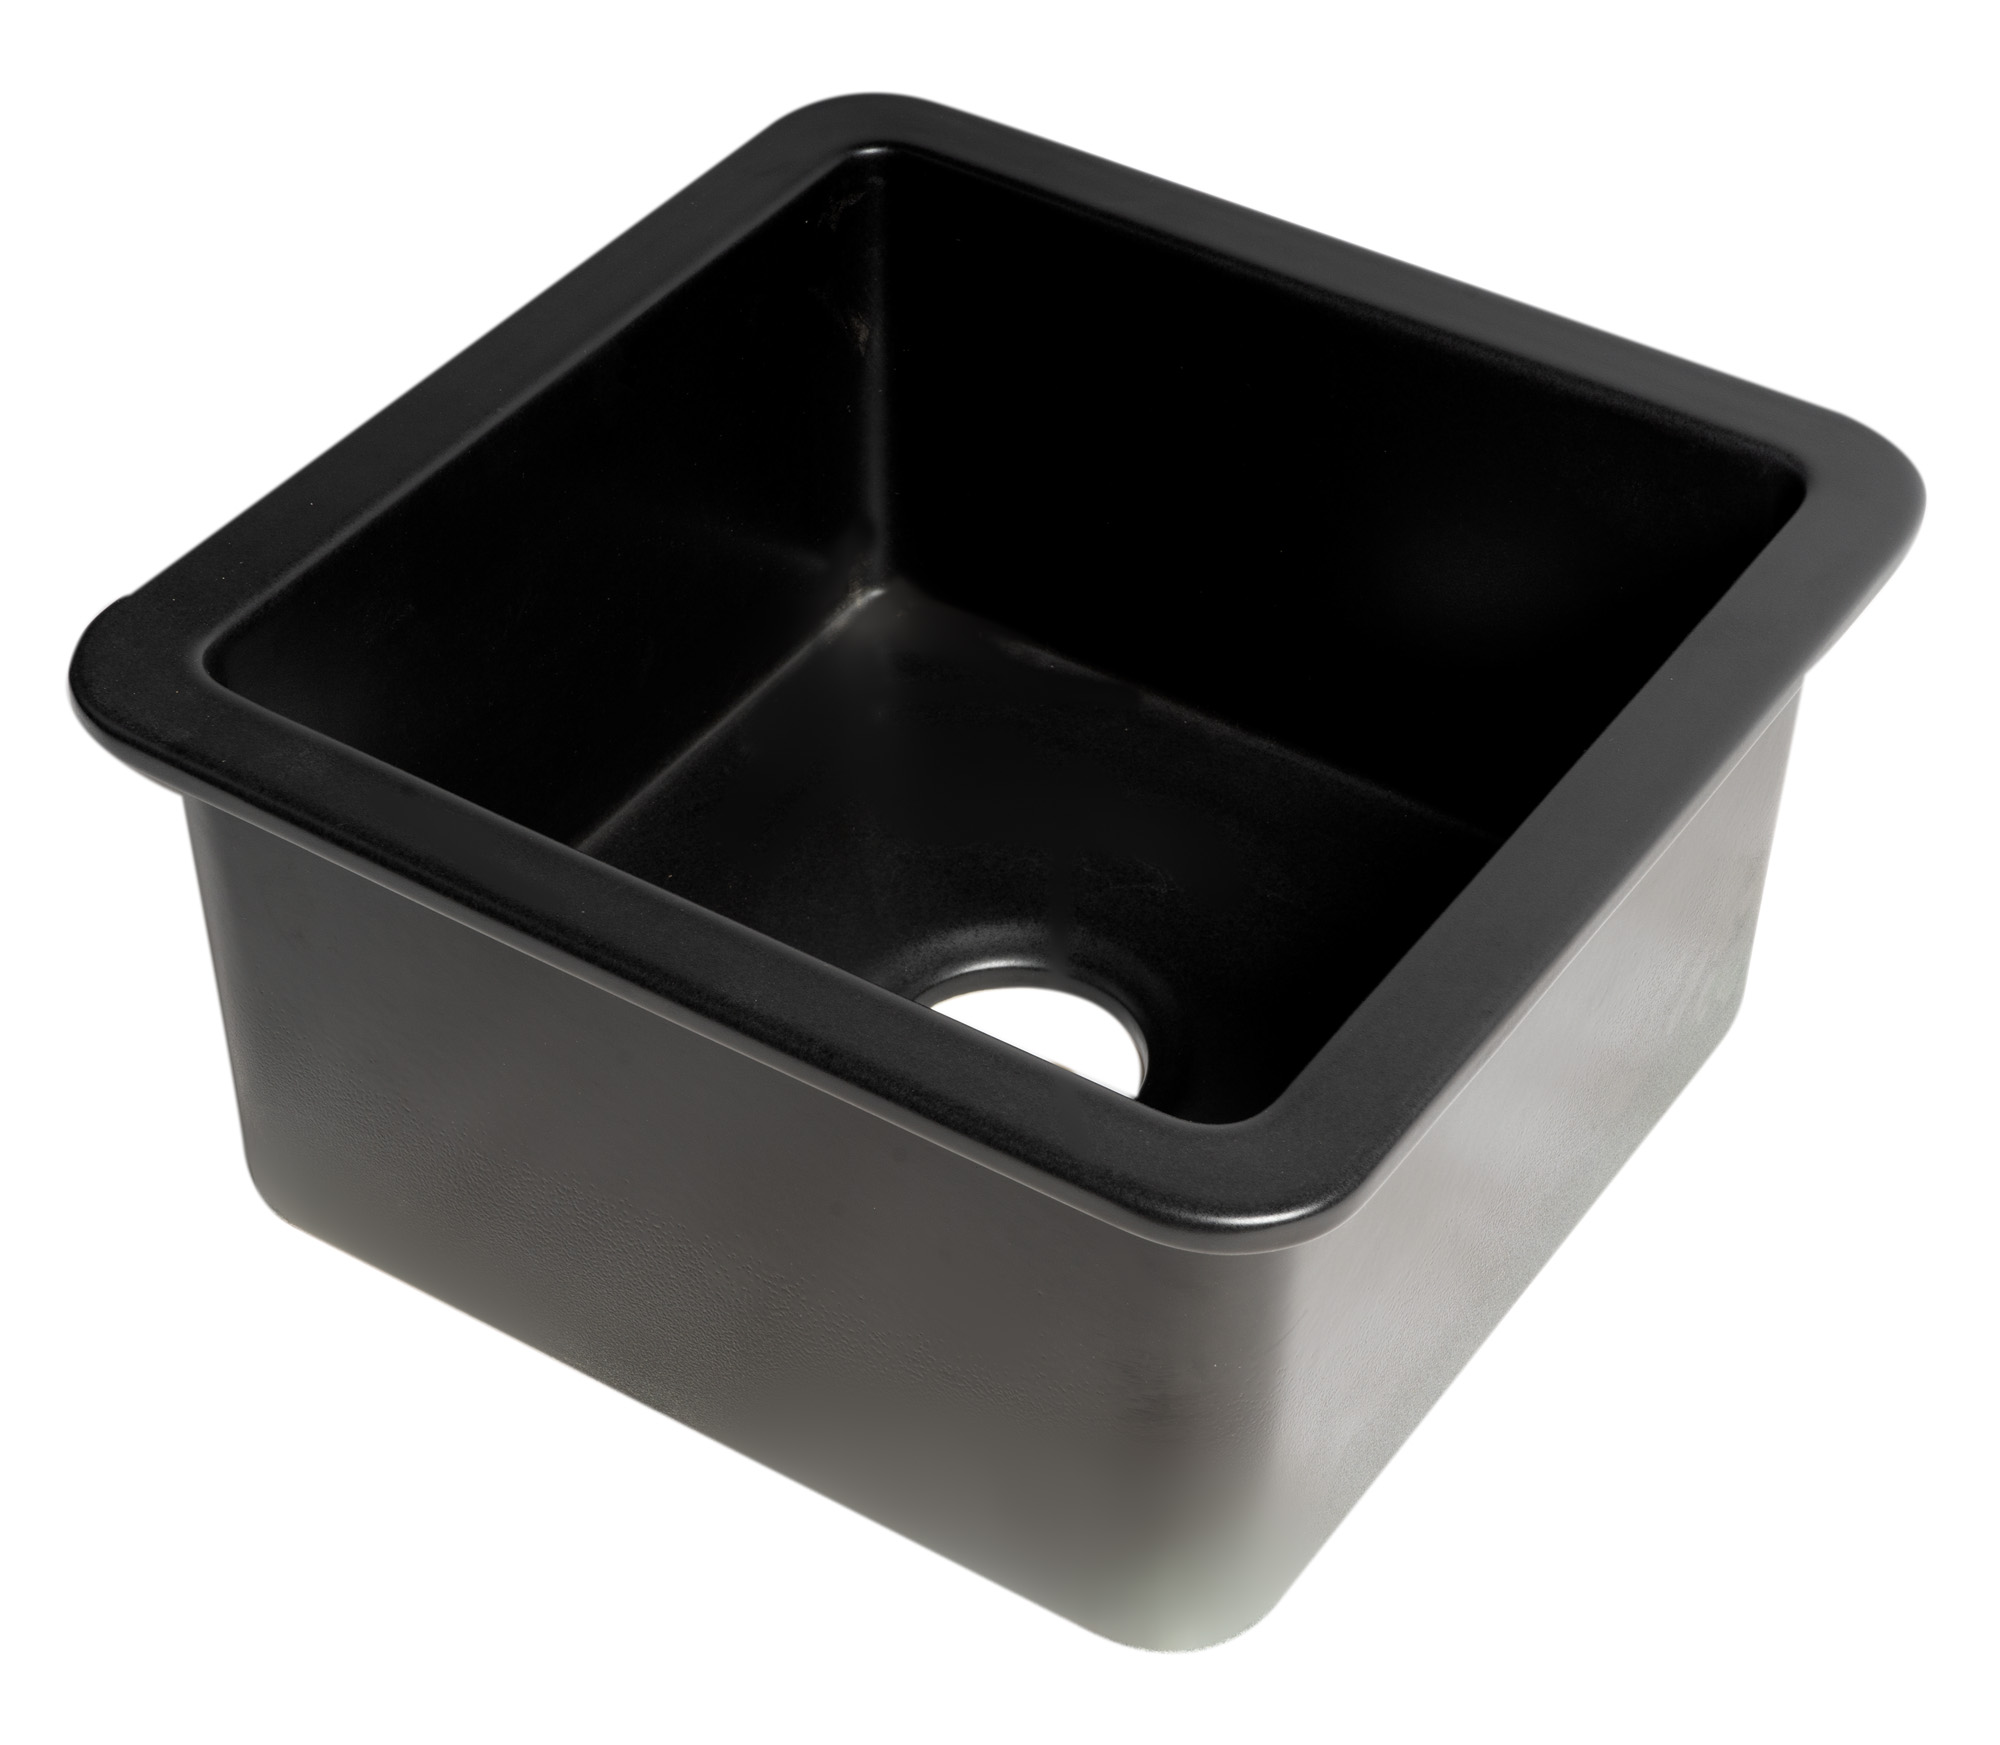 ALFI brand ABF1818S-BM Black Matte Square 18" x 18" Undermount / Drop In Fireclay Prep Sink